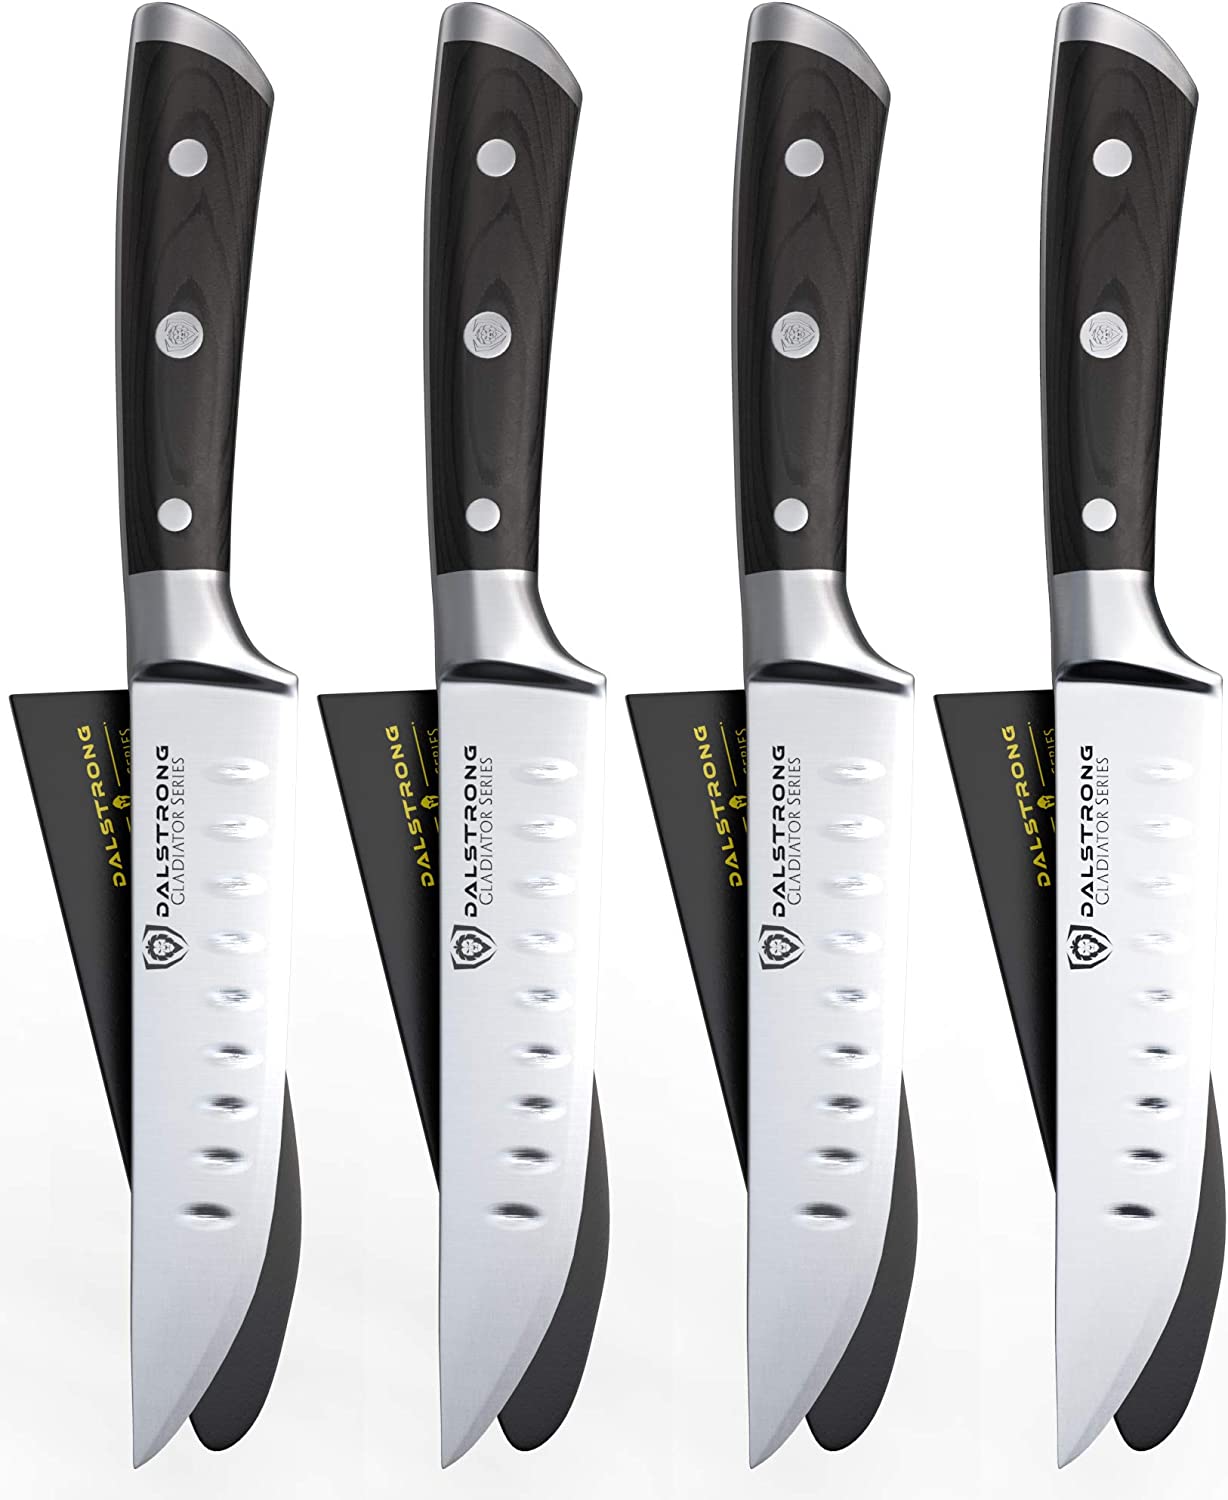 Best Steak Knives Set For YOU